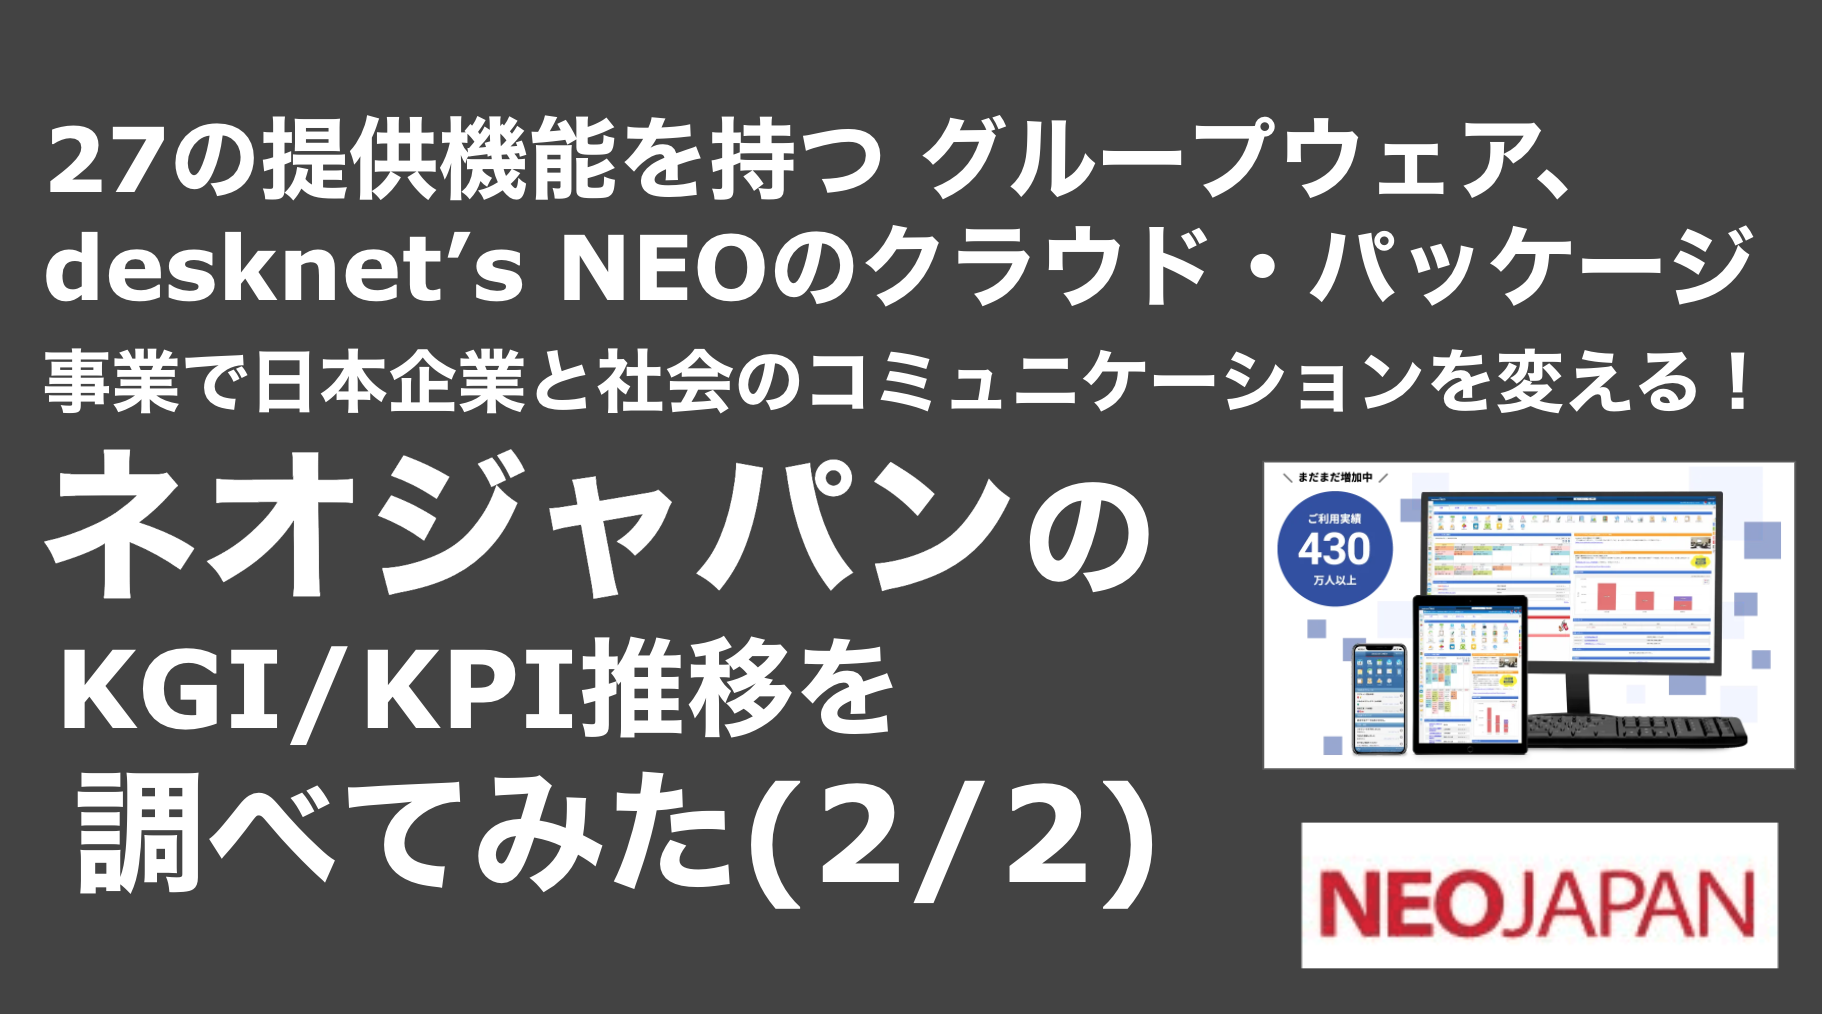 saaslife_27の提供機能を持つ グループウェア、desknet’s NEOのクラウド・パッケージ事業で日本企業と社会のコミュニケーションを変える！ネオジャパンのKGI/KPI推移を調べてみた(2/2)